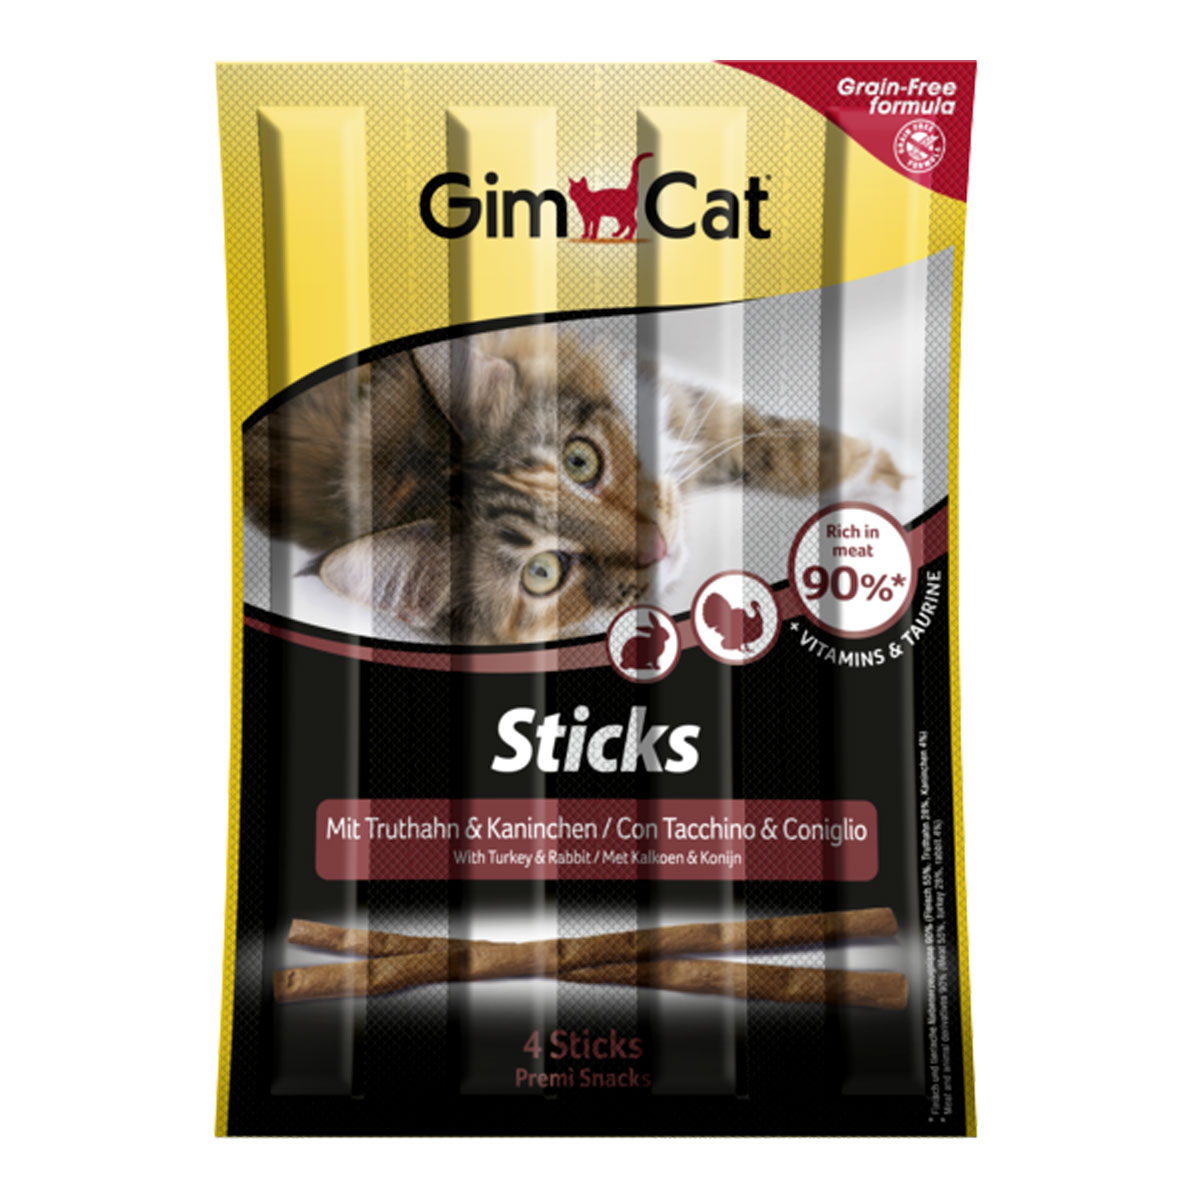 GimCat Sticks Turkey and Rabbit – палочки с индейкой и кроликом для котов